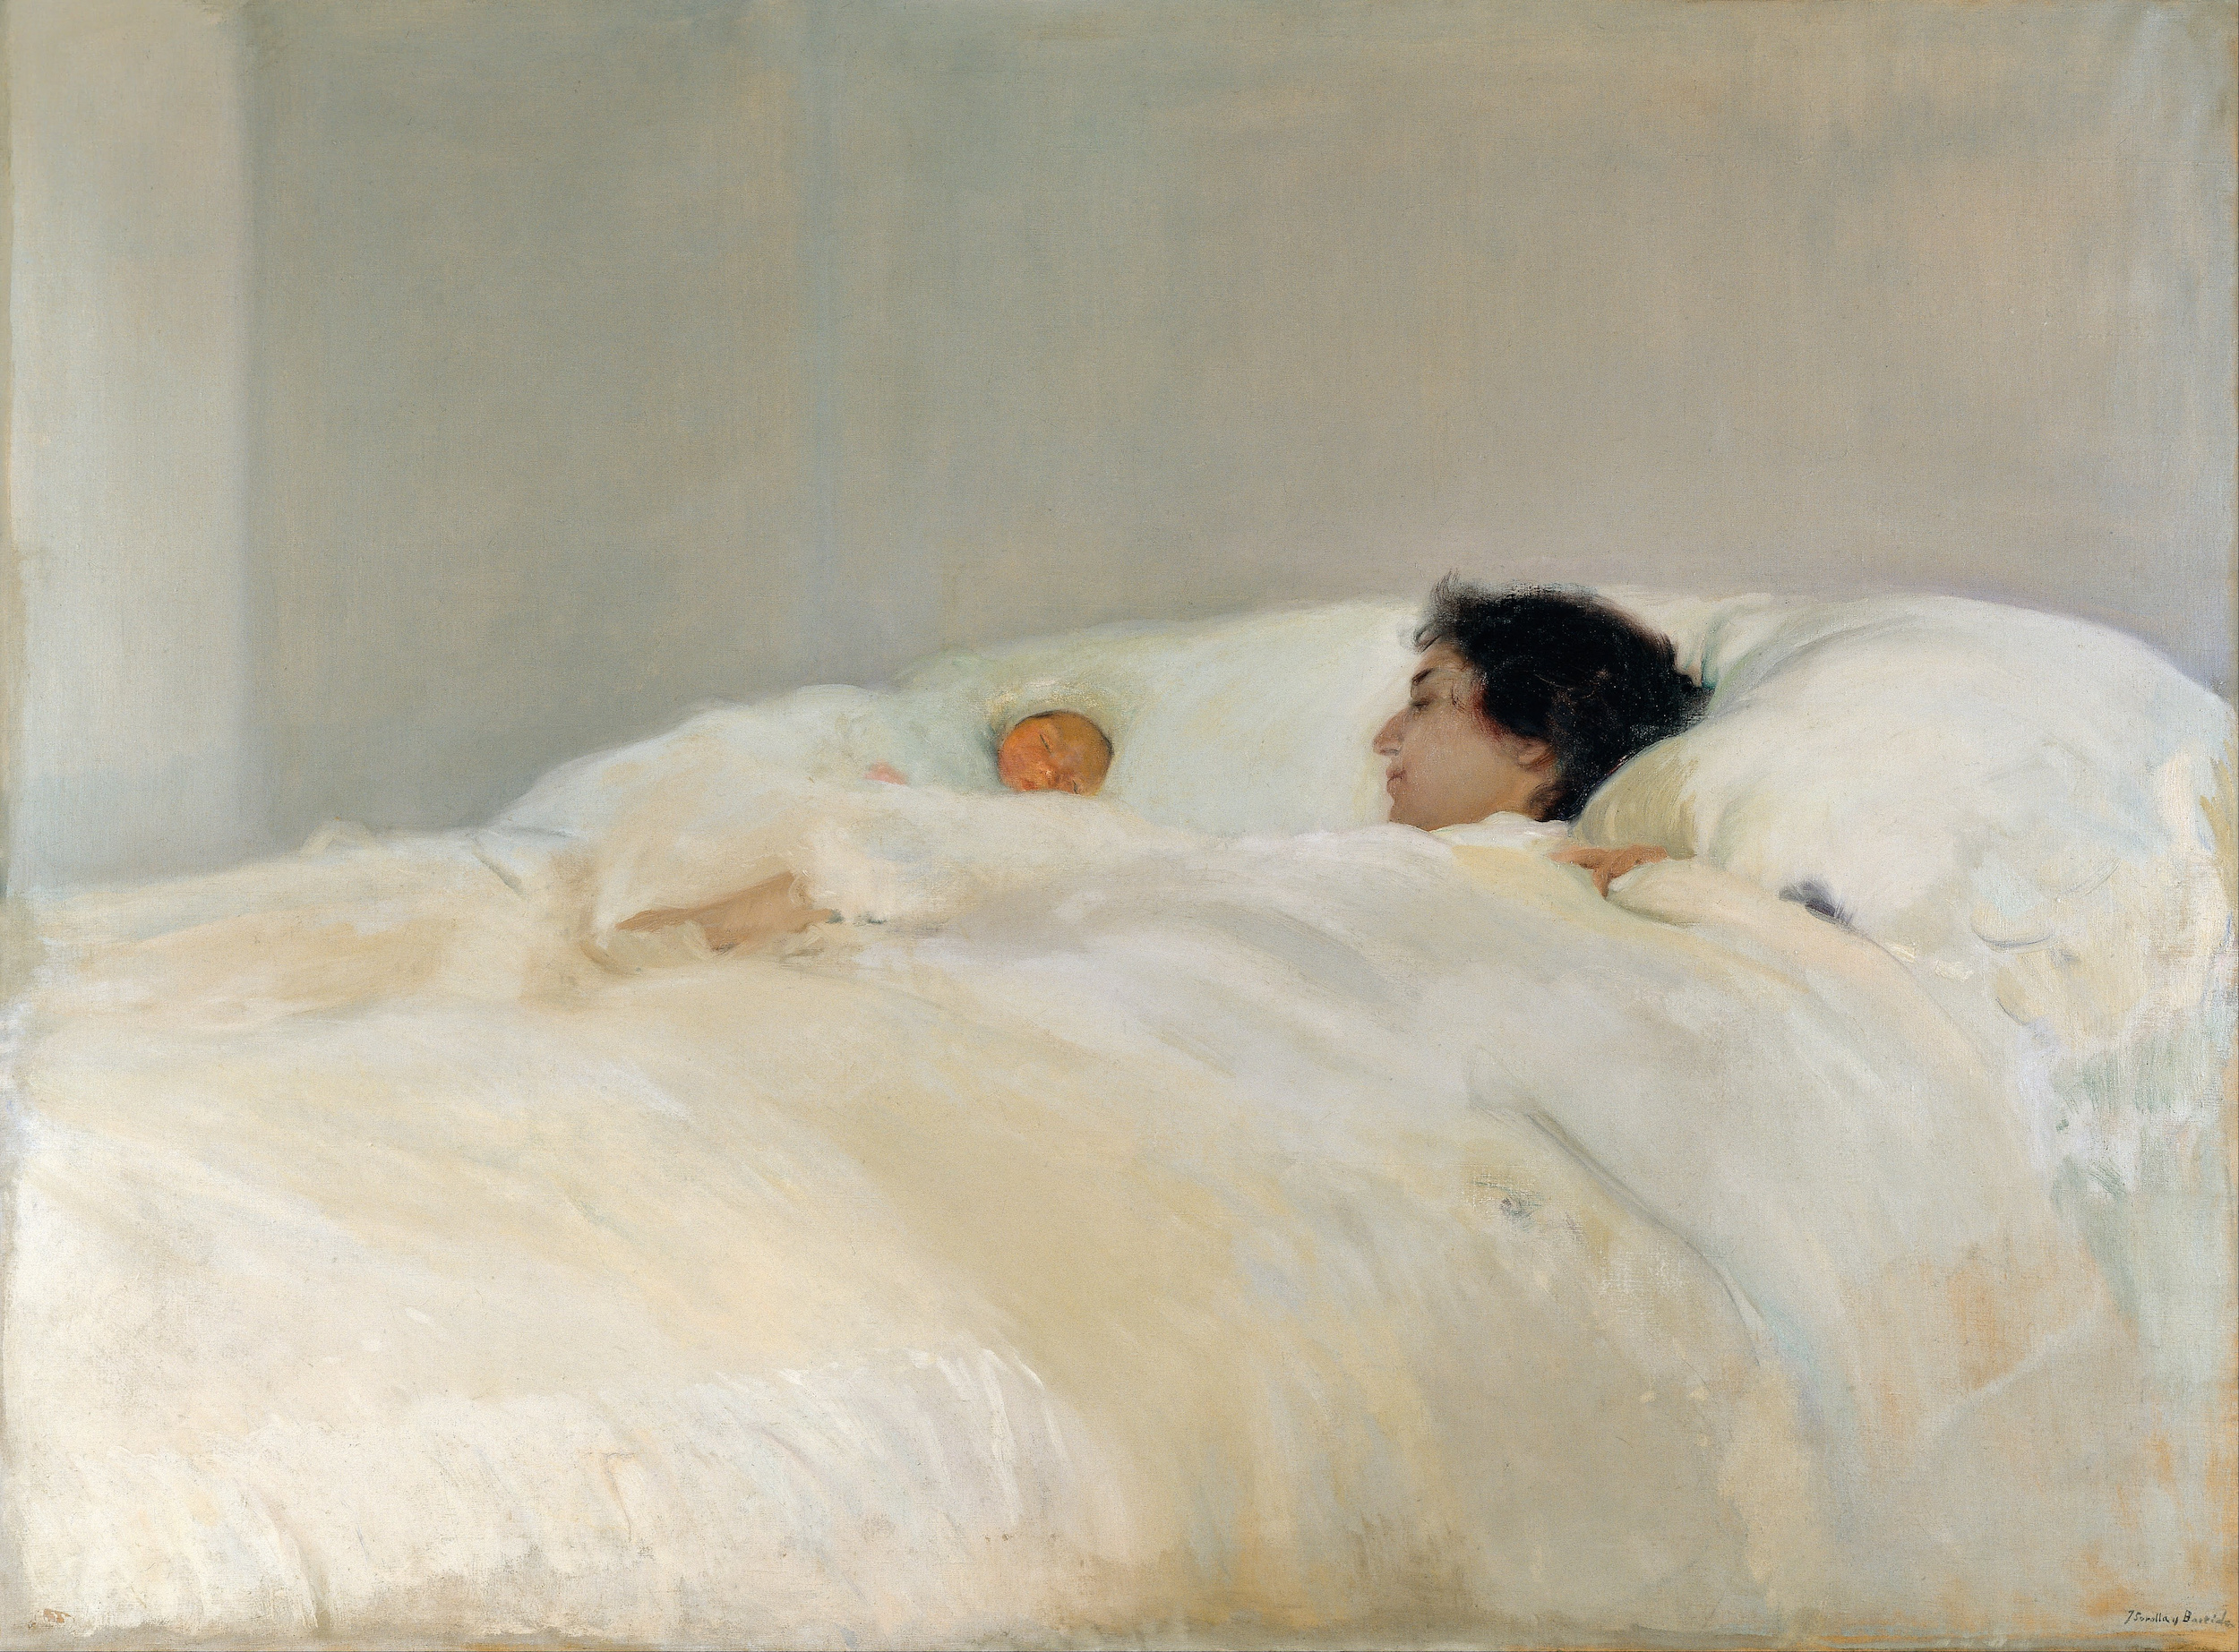 Mamă by Joaquín Sorolla - 1895 - 125 x 169 cm 